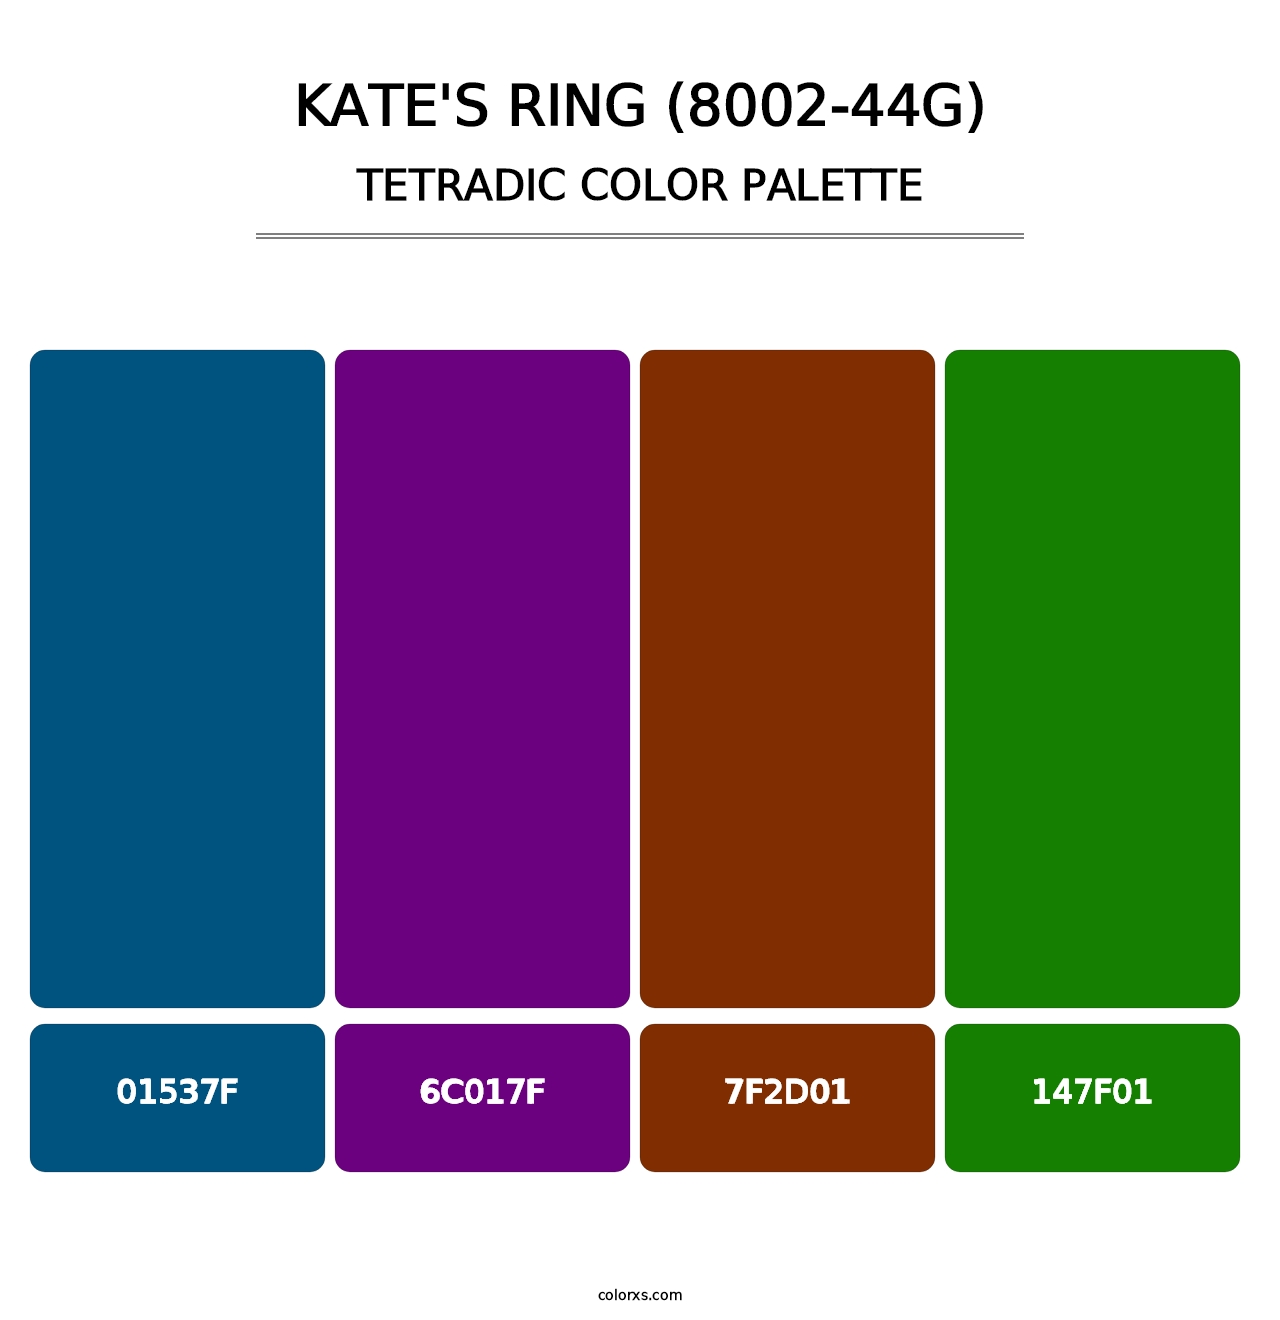 Kate's Ring (8002-44G) - Tetradic Color Palette